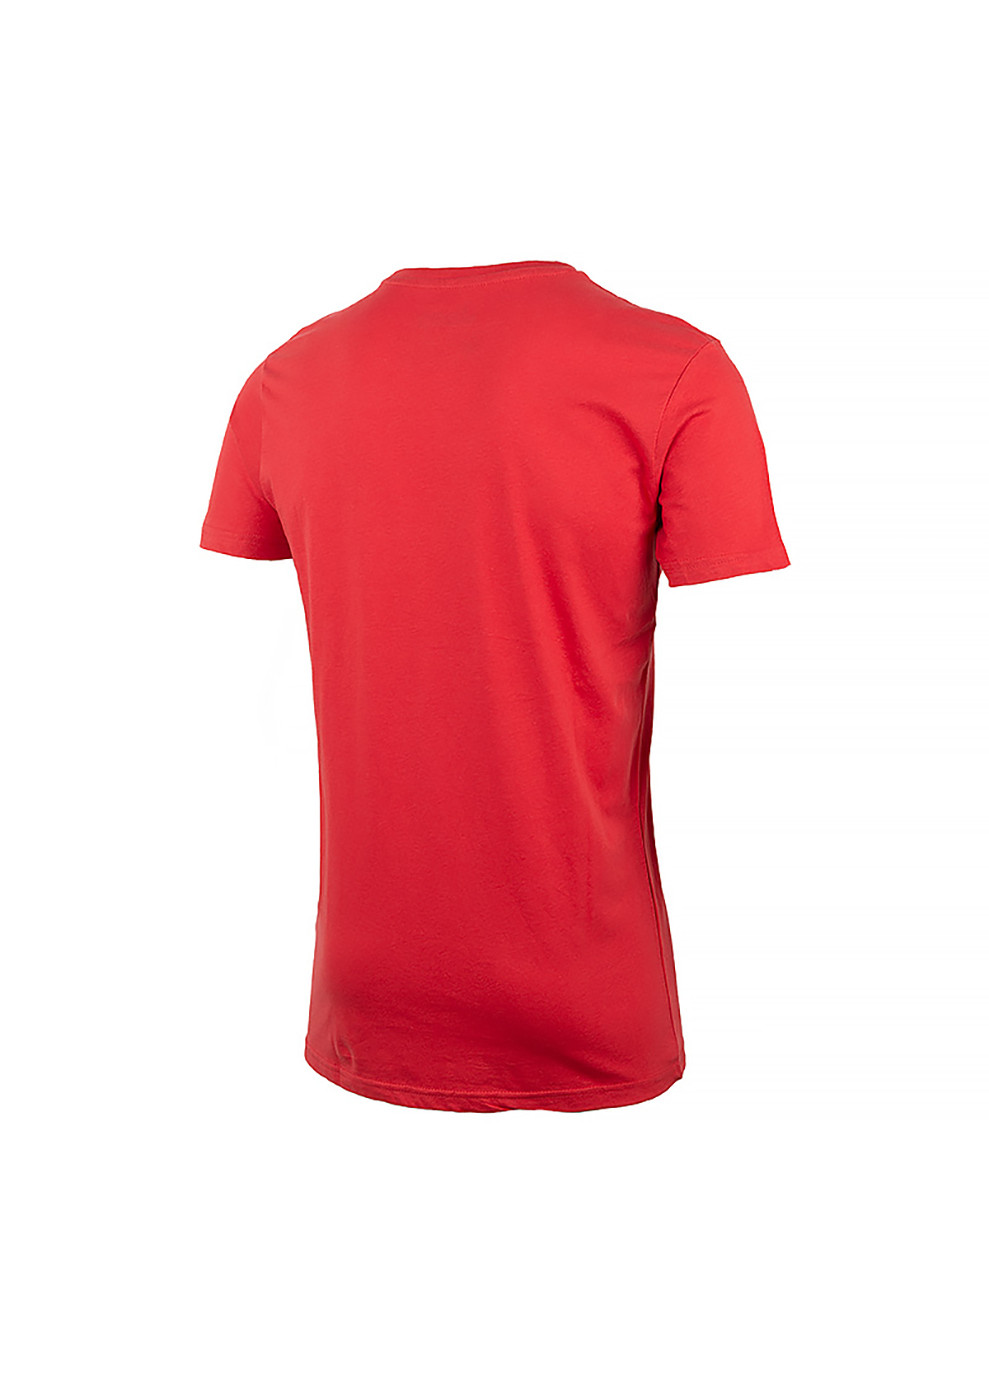 Червона чоловіча футболка t-shirt since 1941 червоний xl (o102591-r699 xl) Jeep